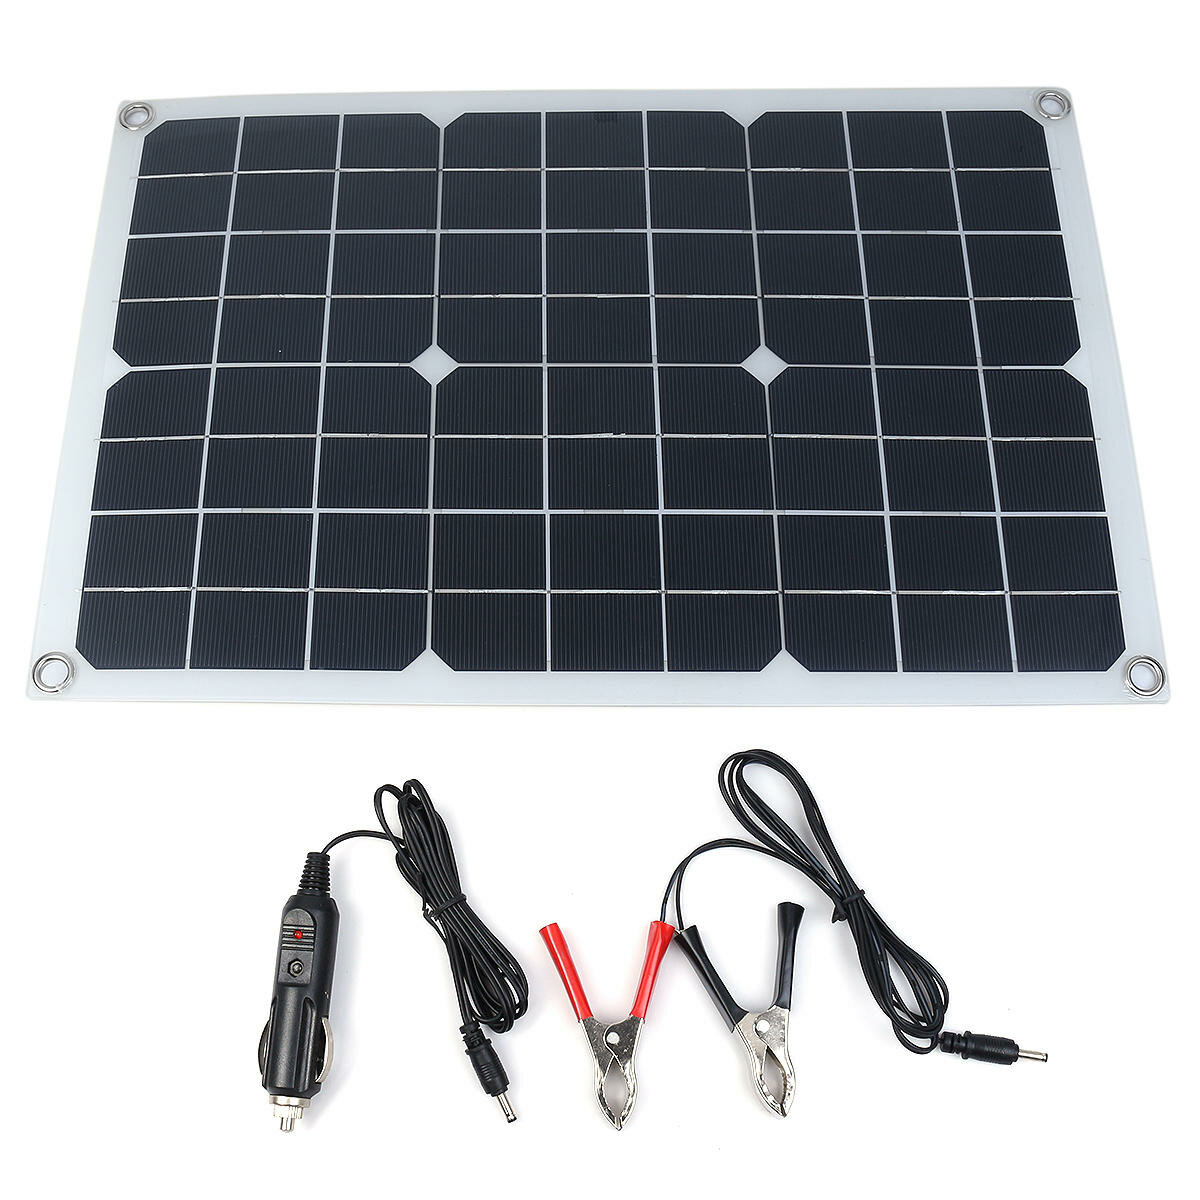 18V 100W Solar Panel Taşınabilir Solar Dış Mekanlar için Güç Bankası Kampçılık Bot Akıllı Telefonlar Batarya Şarj Cihazları Hücreleri Acil Güç